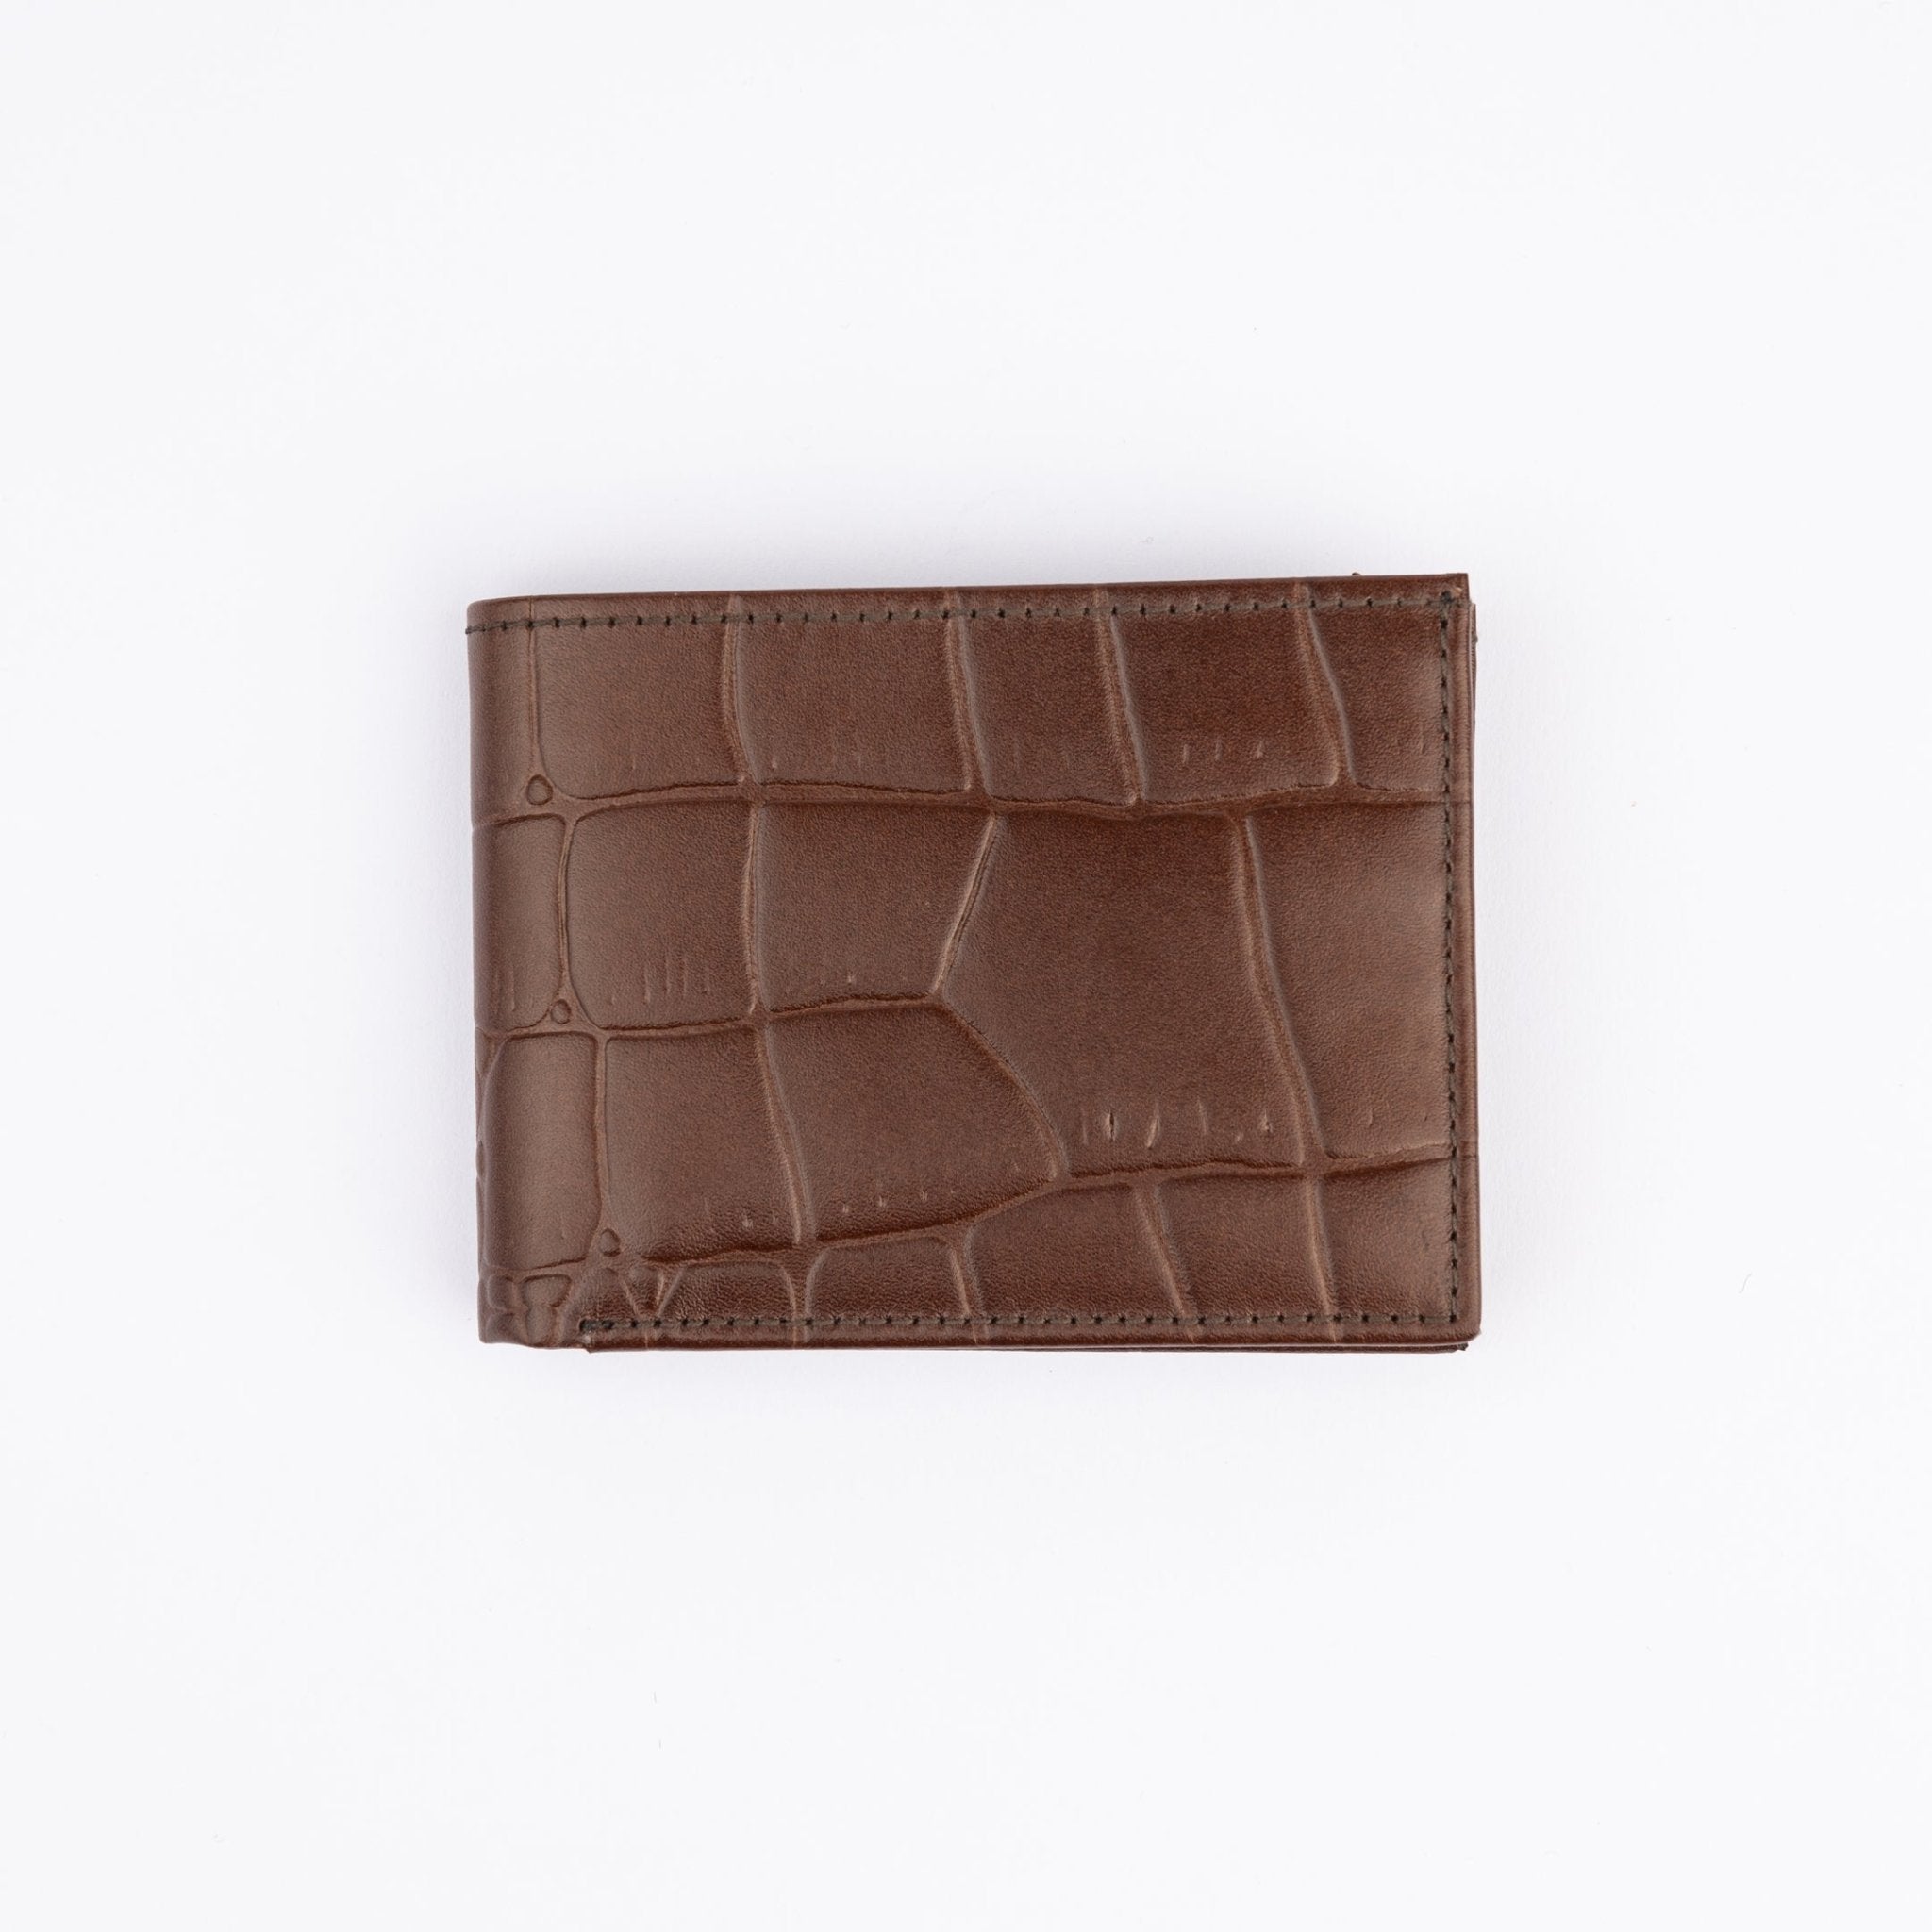 Leather Wallet - Dark Brown - Crocodile pattern - Hatchill